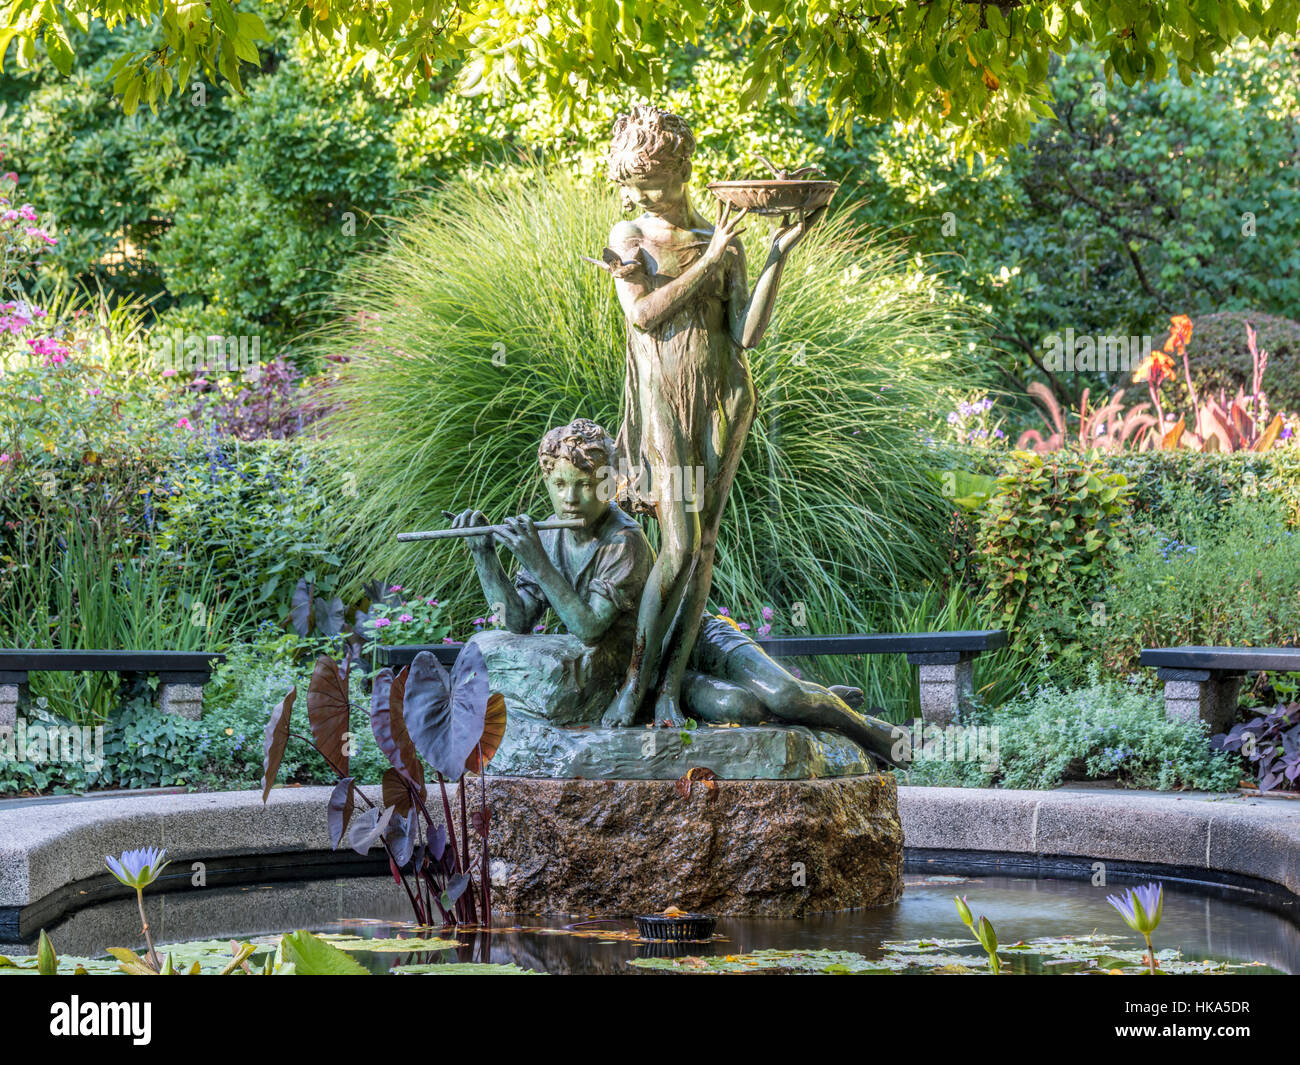 Fuente Burnett el Jardín Secreto de la escultura se encuentra en el borde de una pequeña piscina de hormigón que ofrece una gran variedad de lirios de agua. Foto de stock